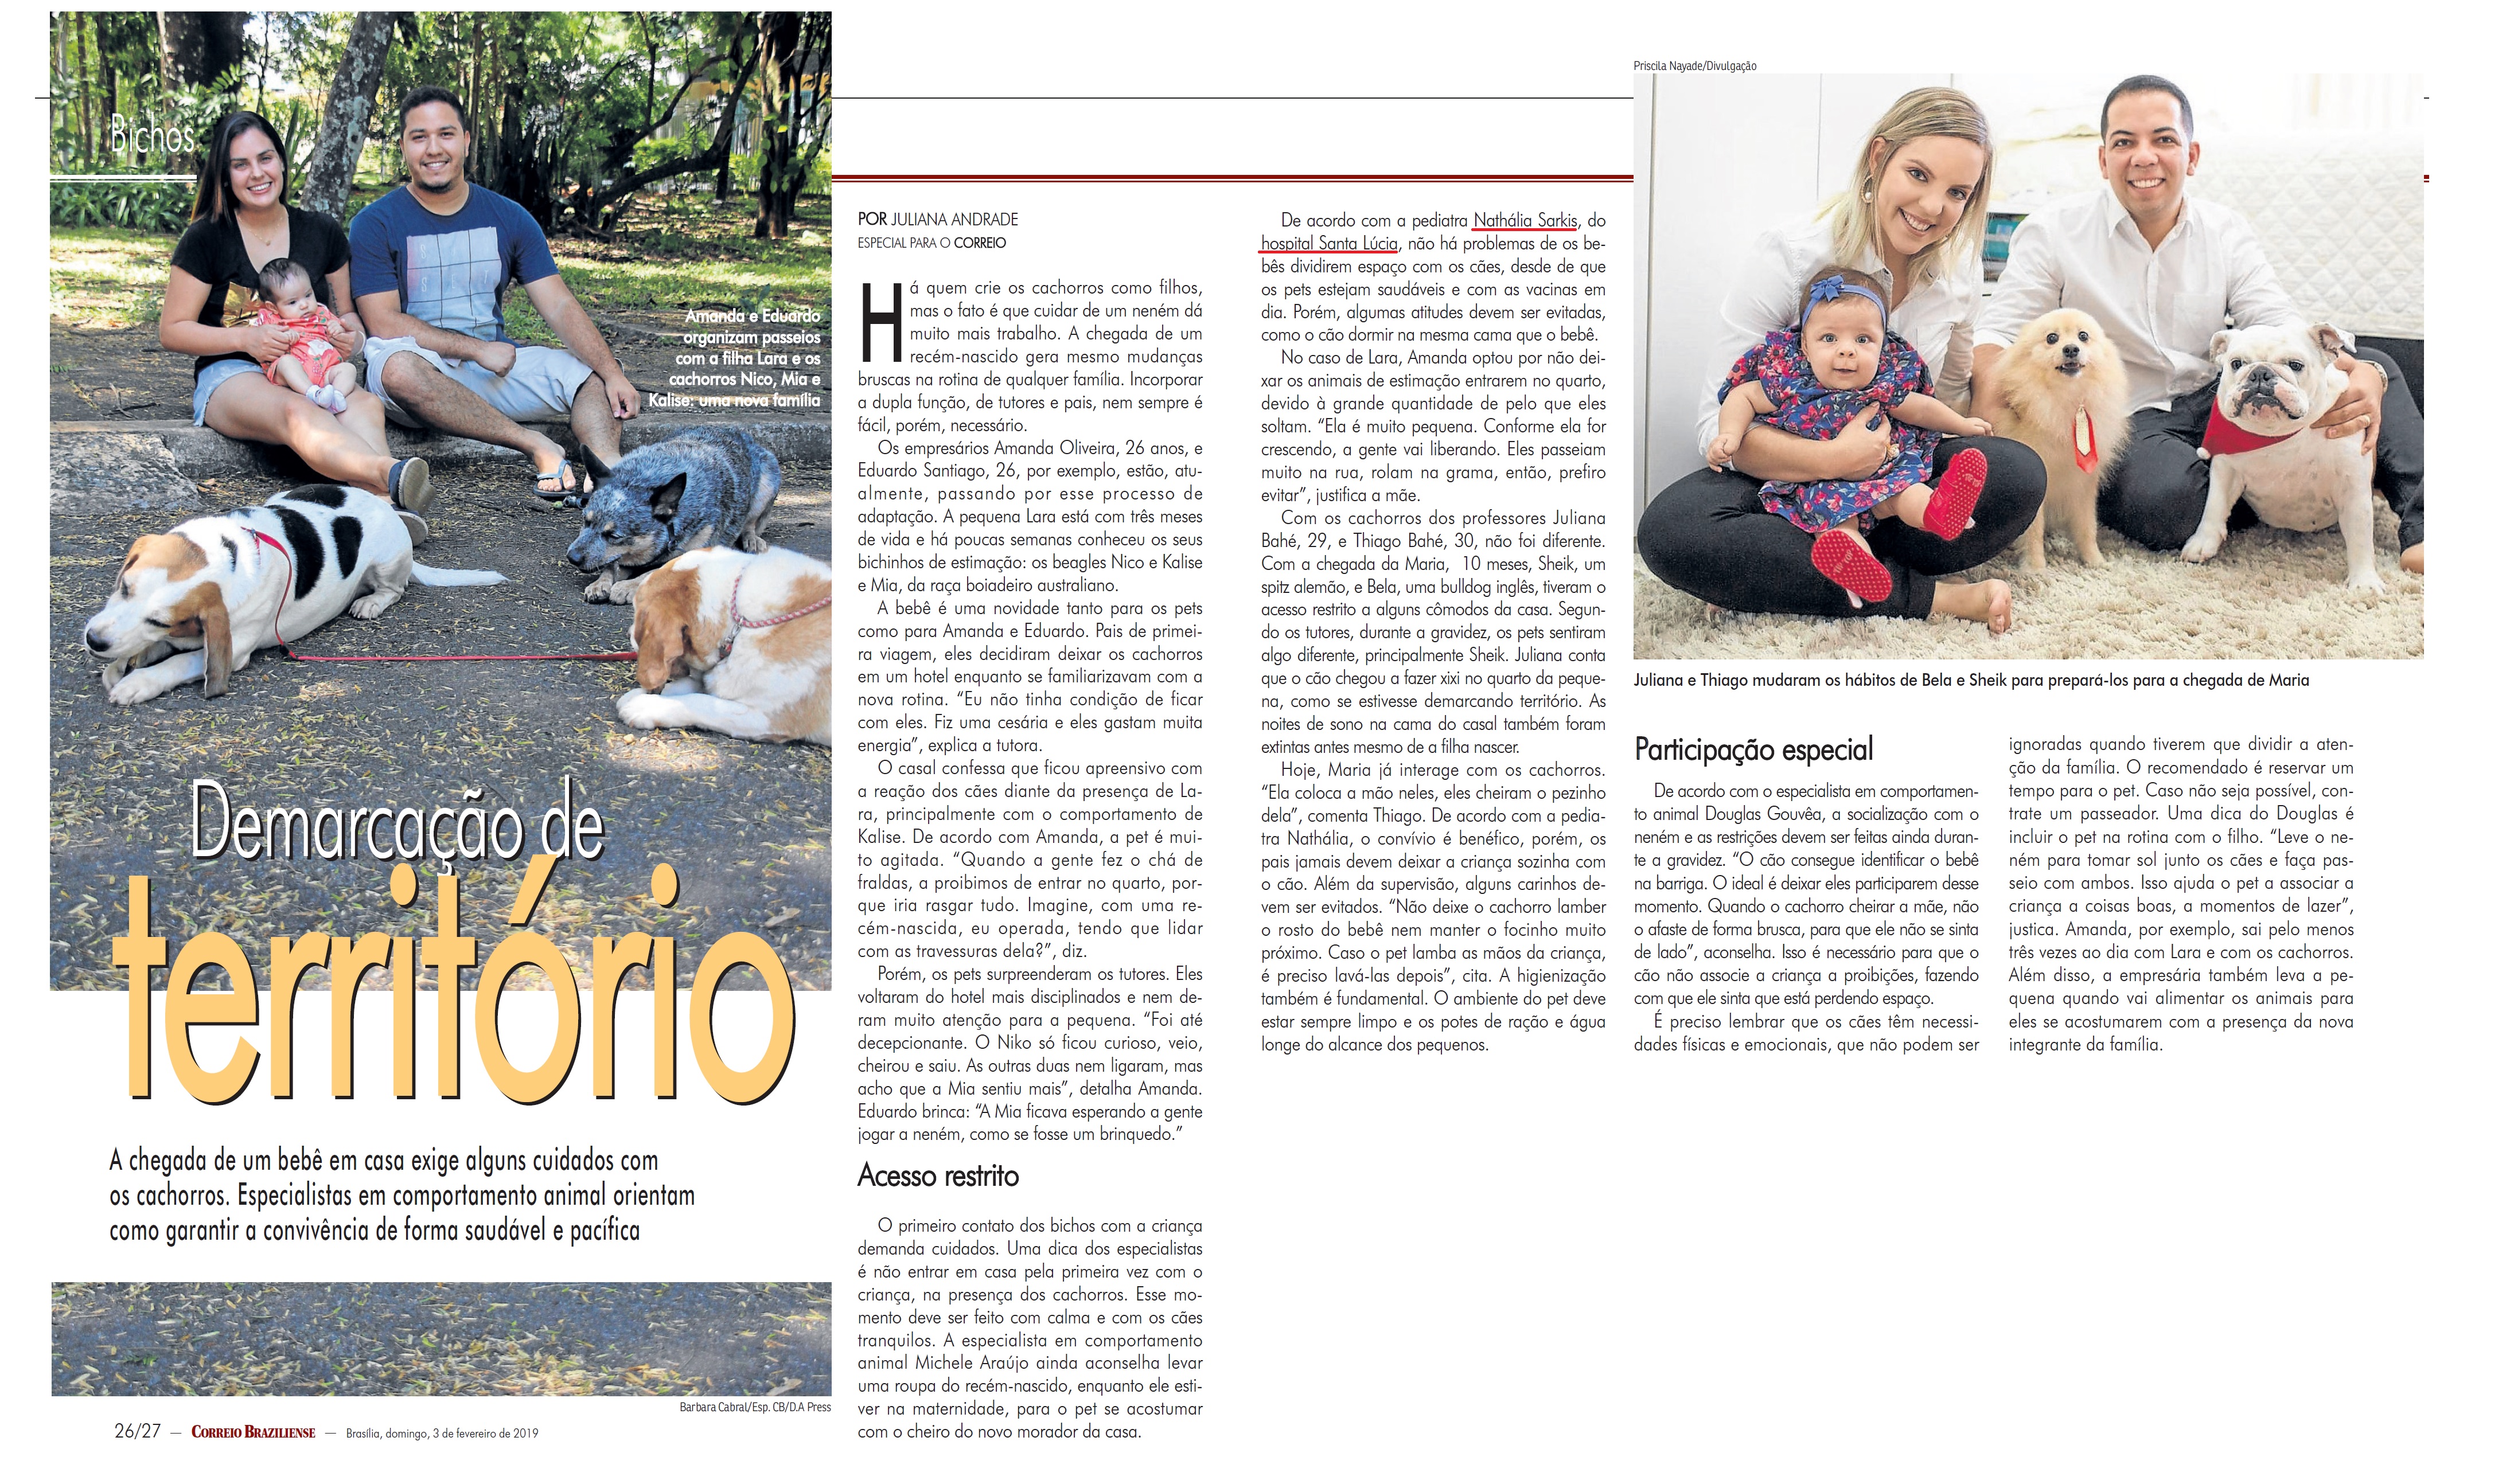 Revista do Correio - Dra. Nathália Sarkis HSLS - 04-02-2019